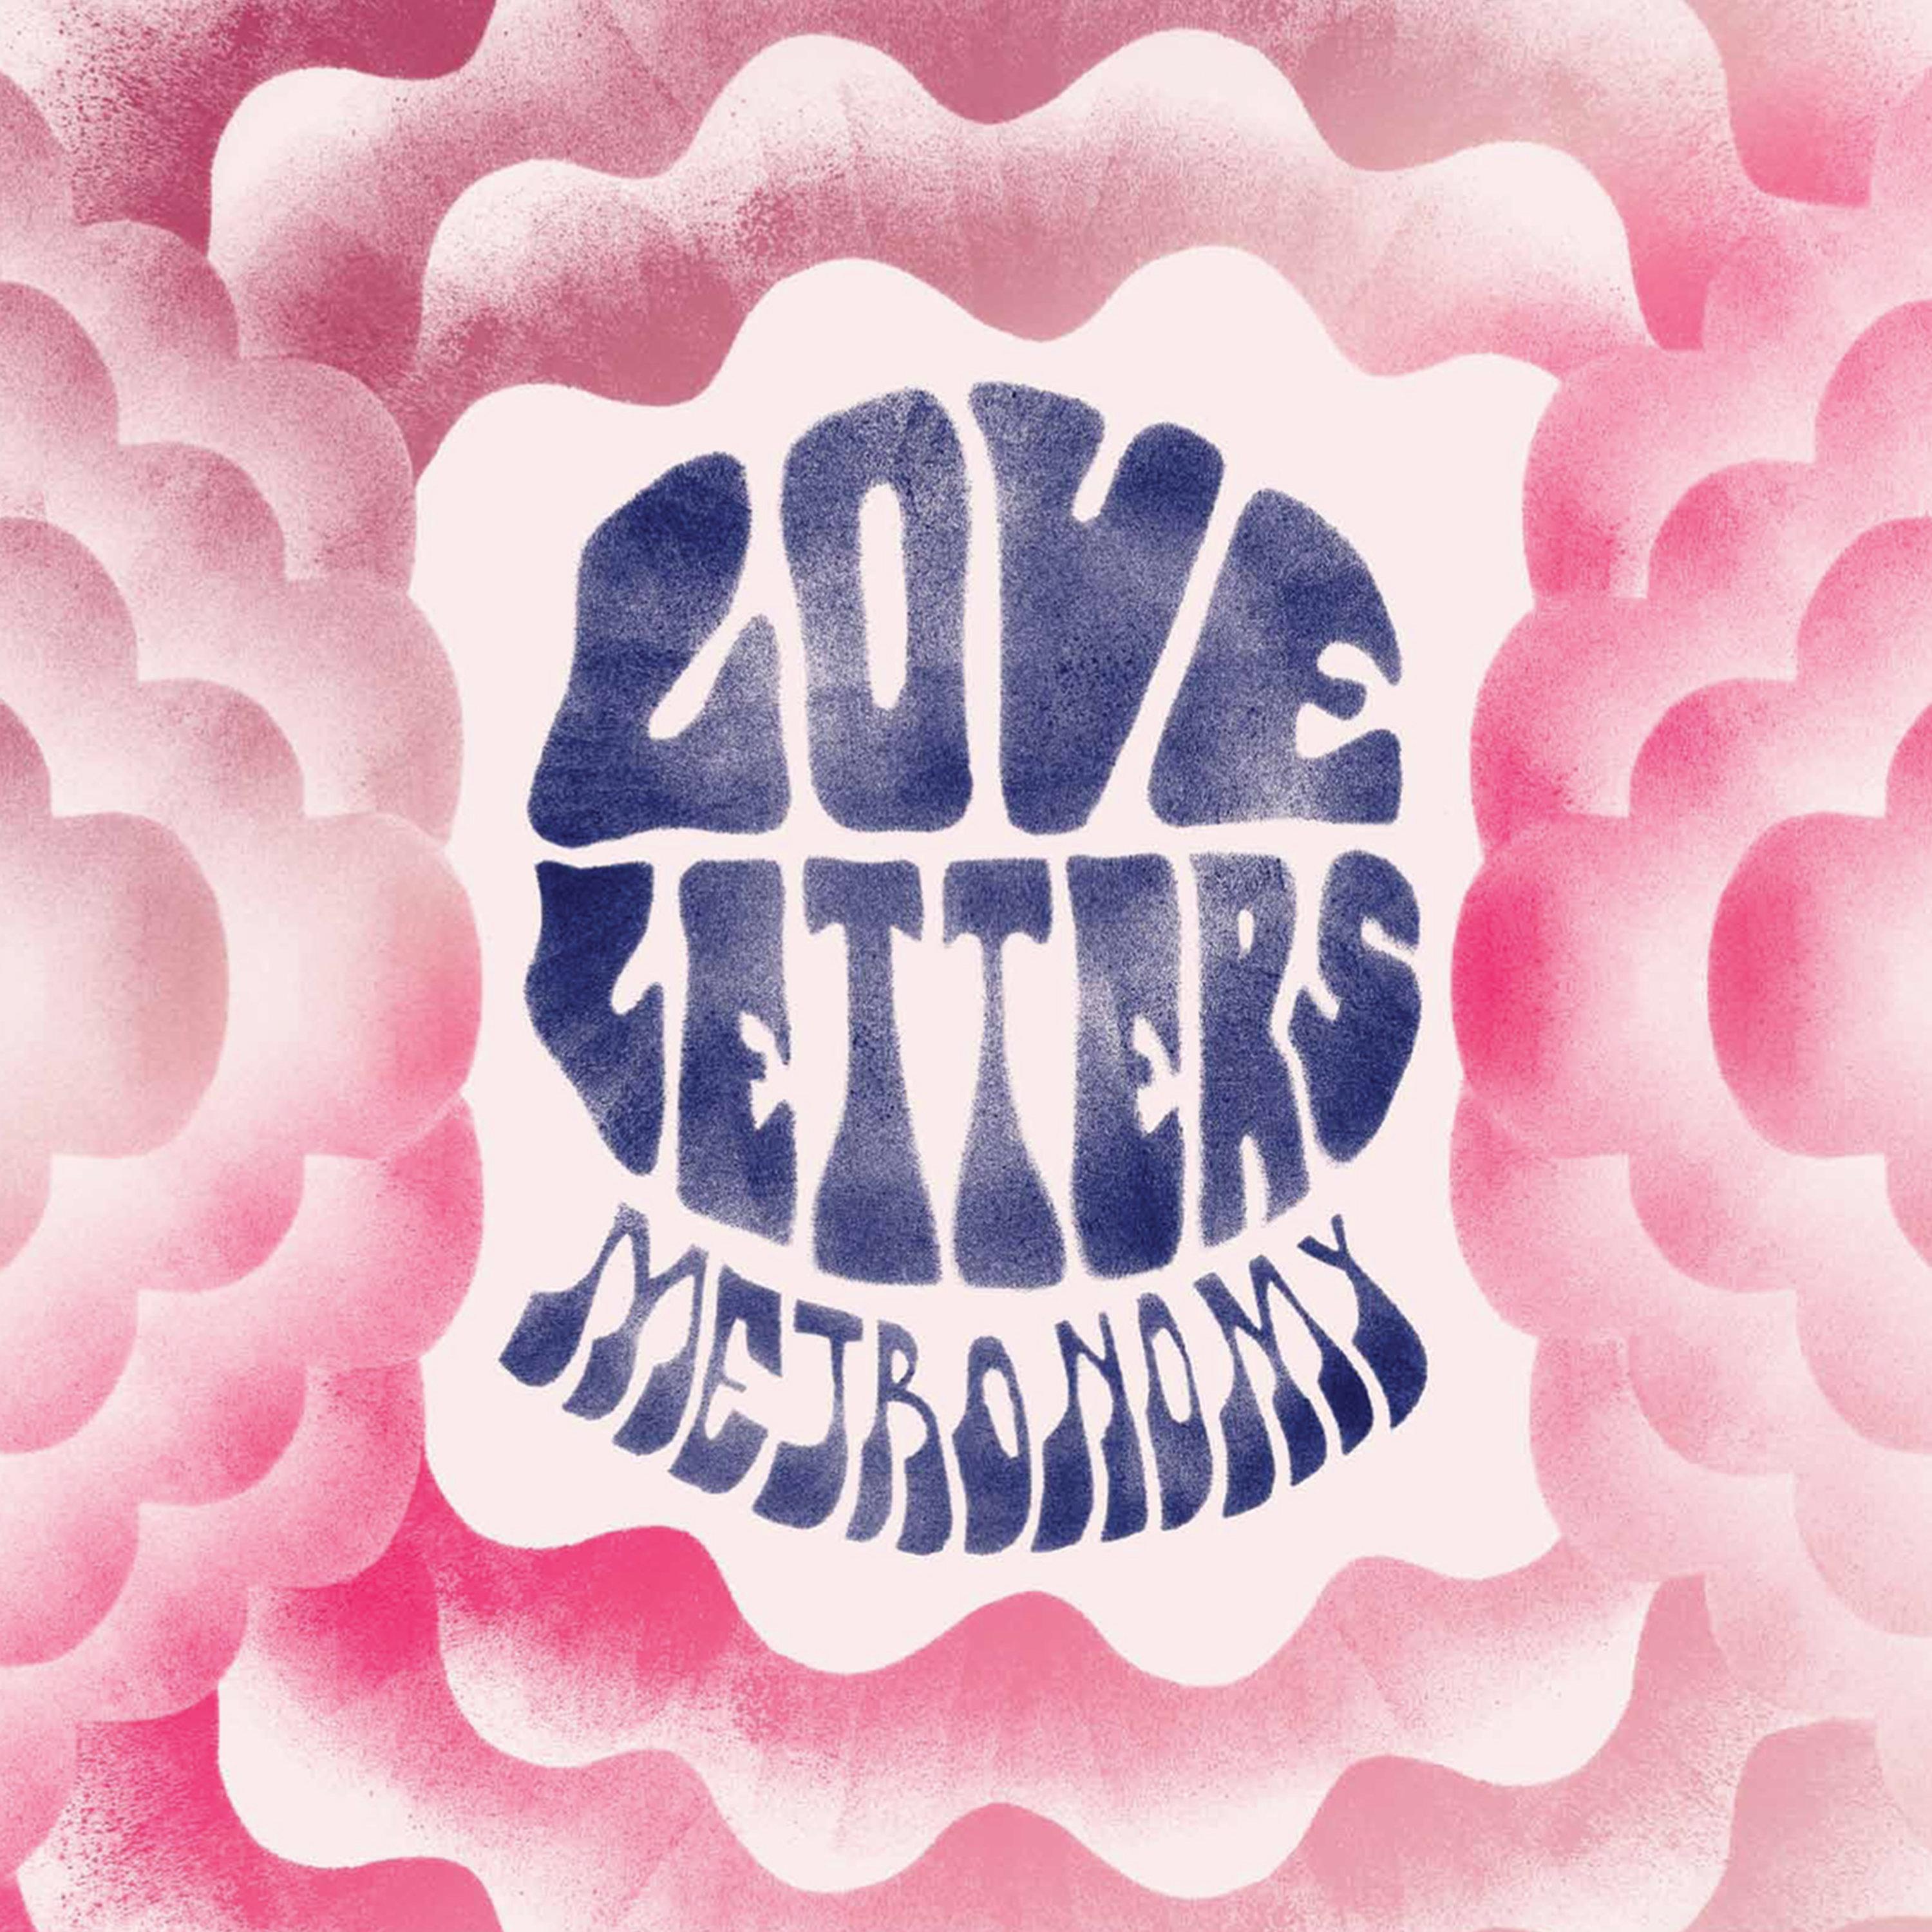 Love Letters歌词 歌手Metronomy-专辑Love Letters-单曲《Love Letters》LRC歌词下载